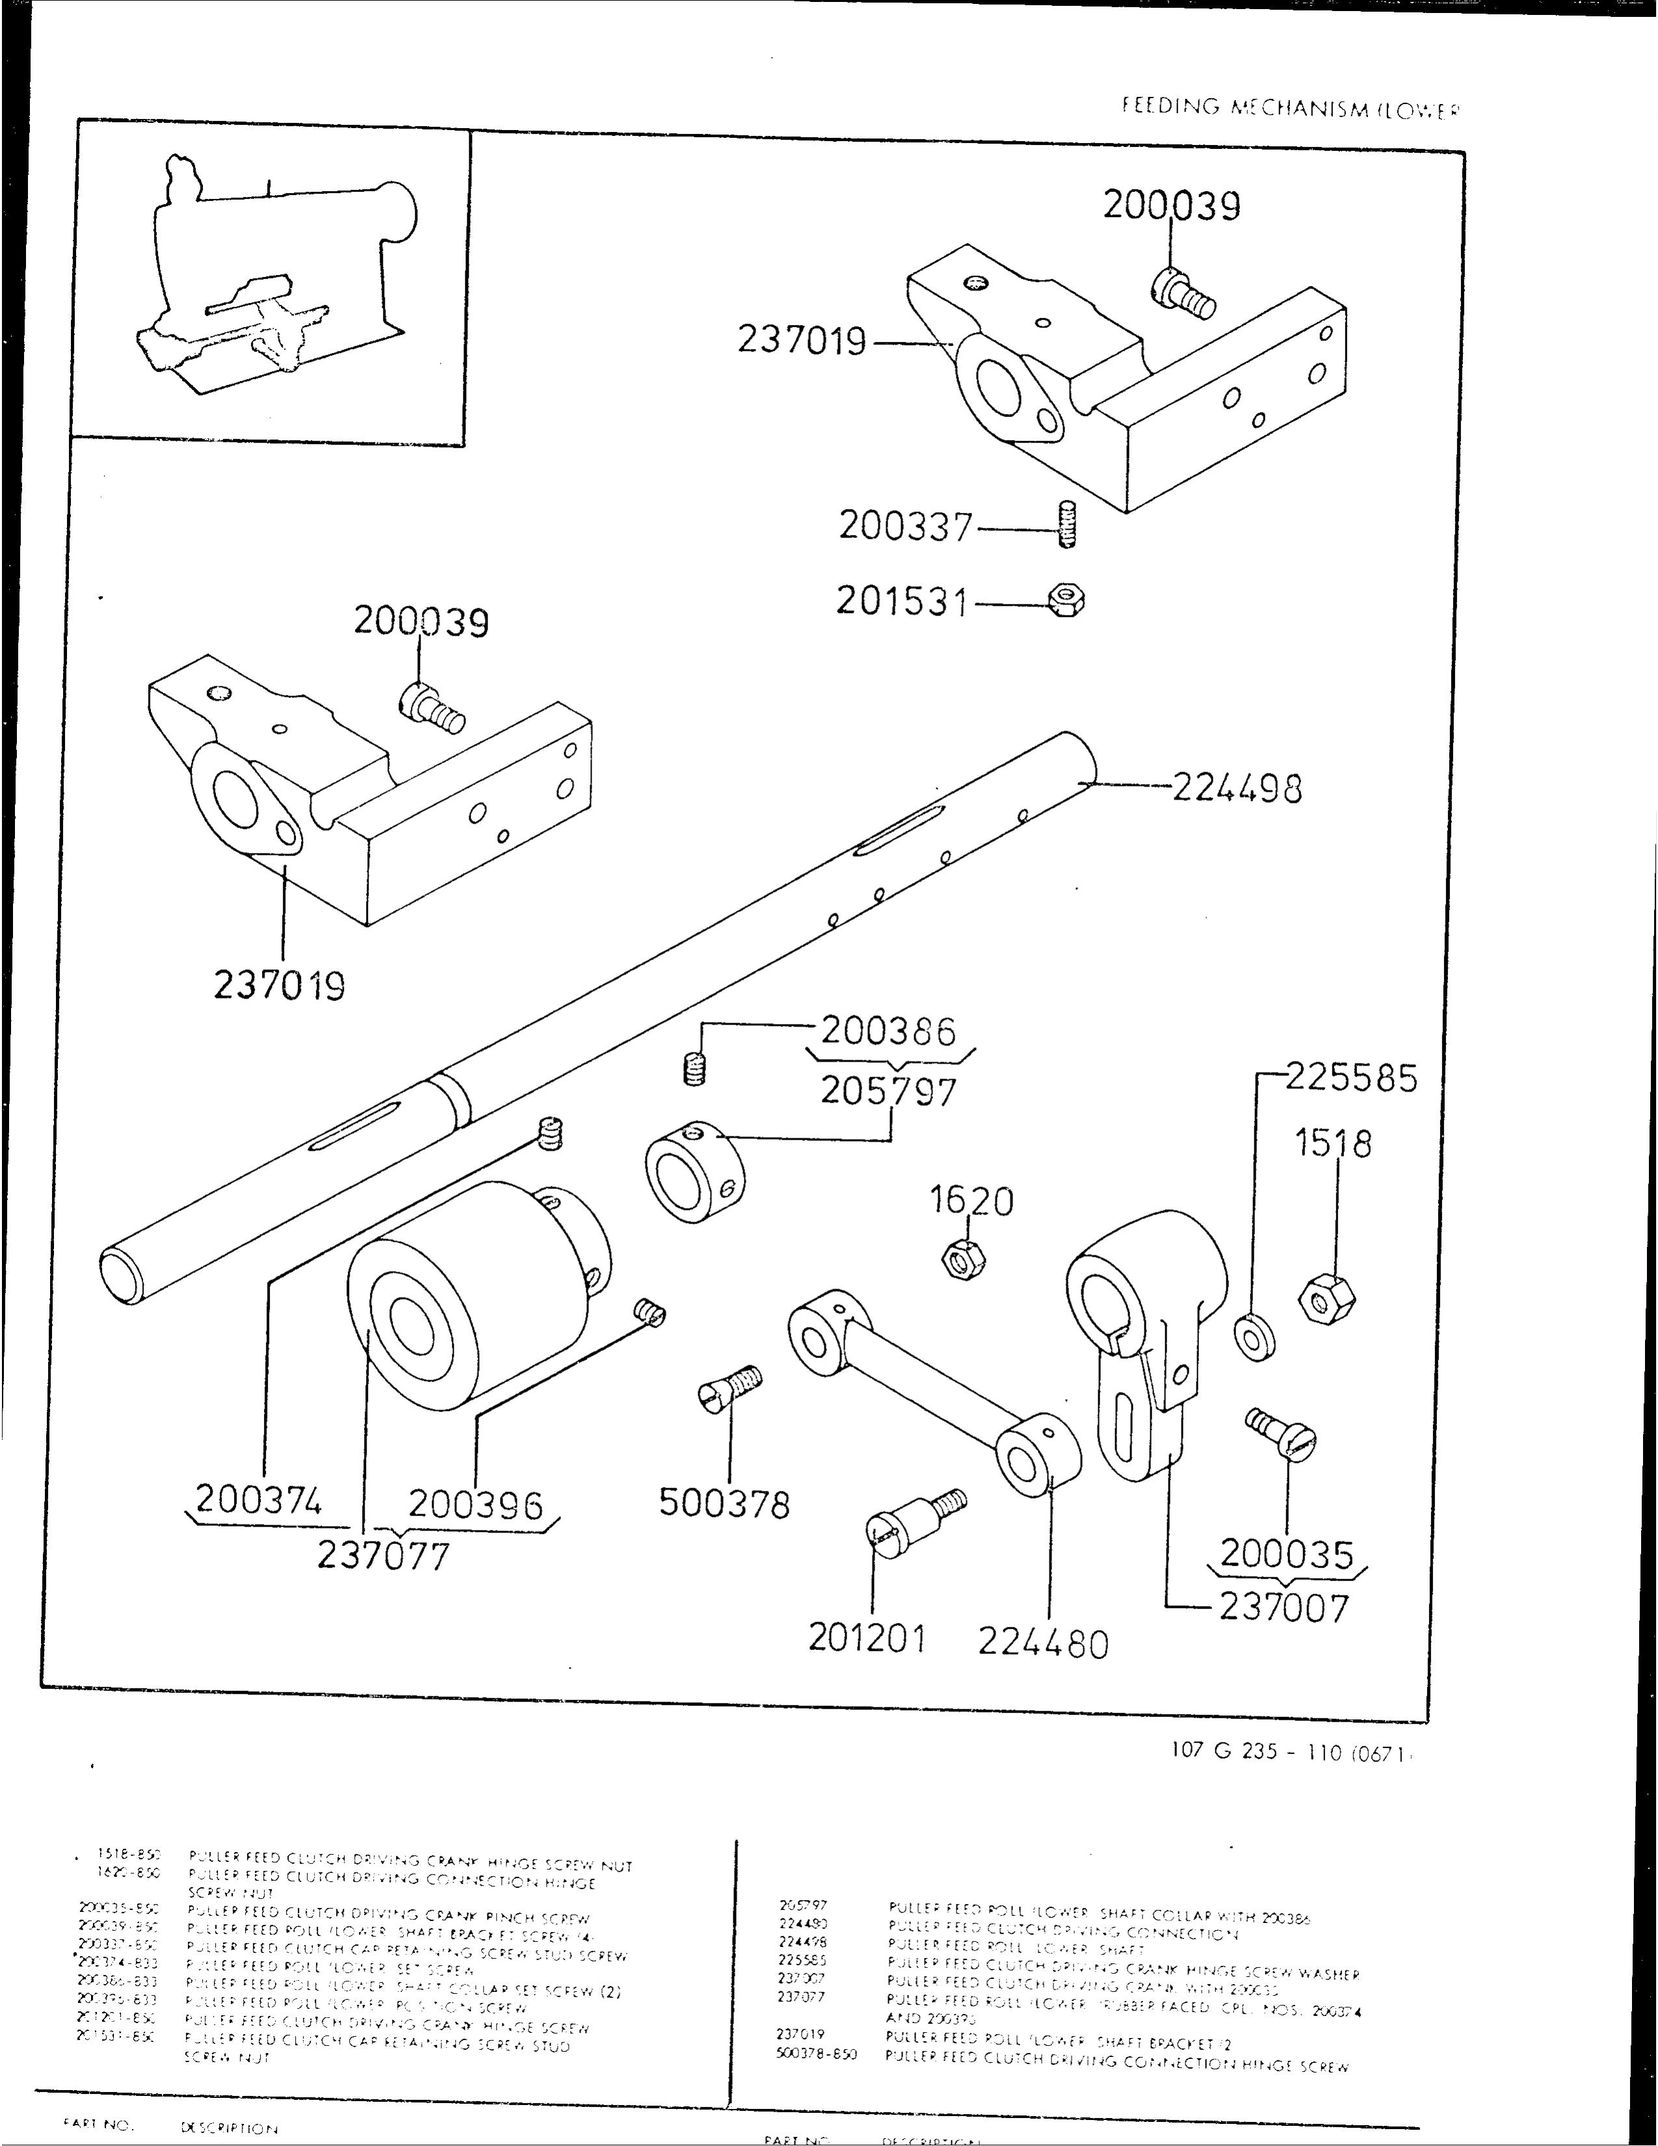 Singer 107G235 Sewing Machine User Manual (Page 12)